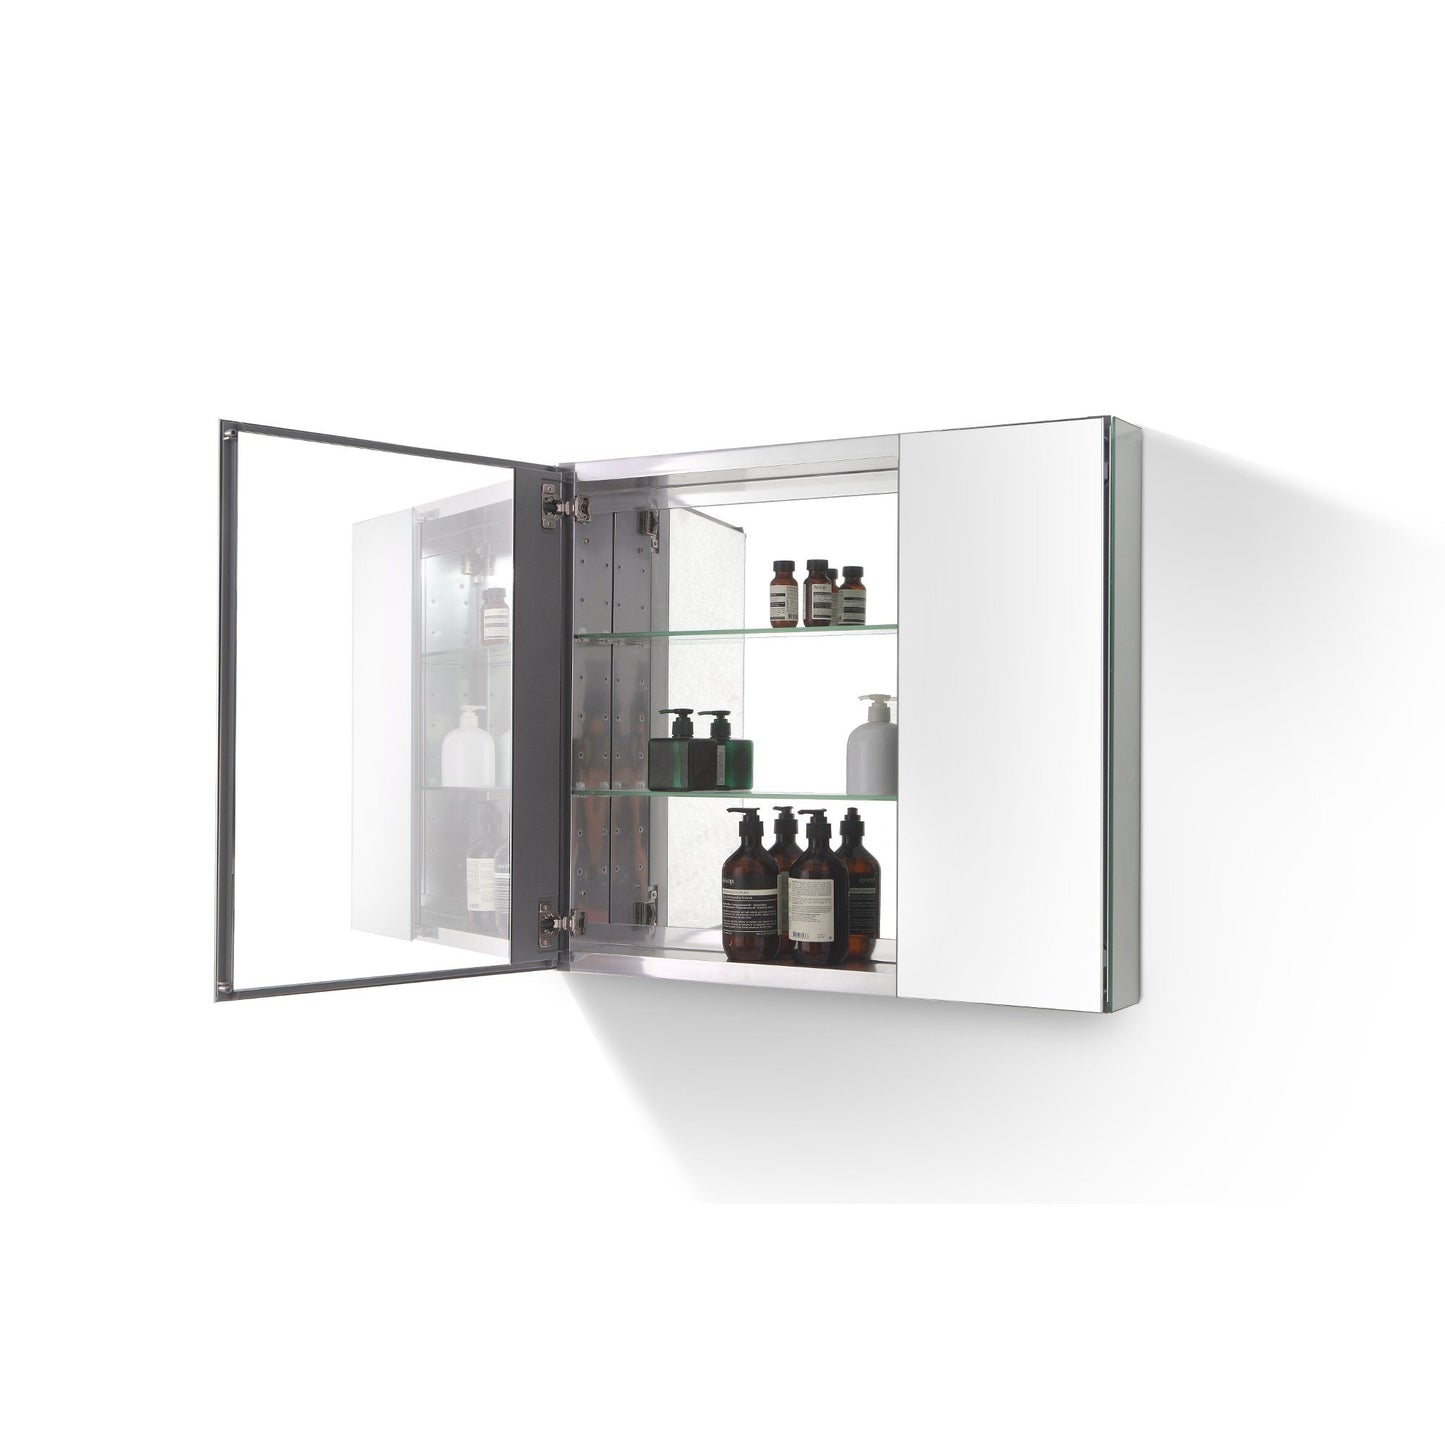 Eviva Lazy 30 inch Mirror Medicine Cabinet with No Light - Luxe Bathroom Vanities Luxury Bathroom Fixtures Bathroom Furniture